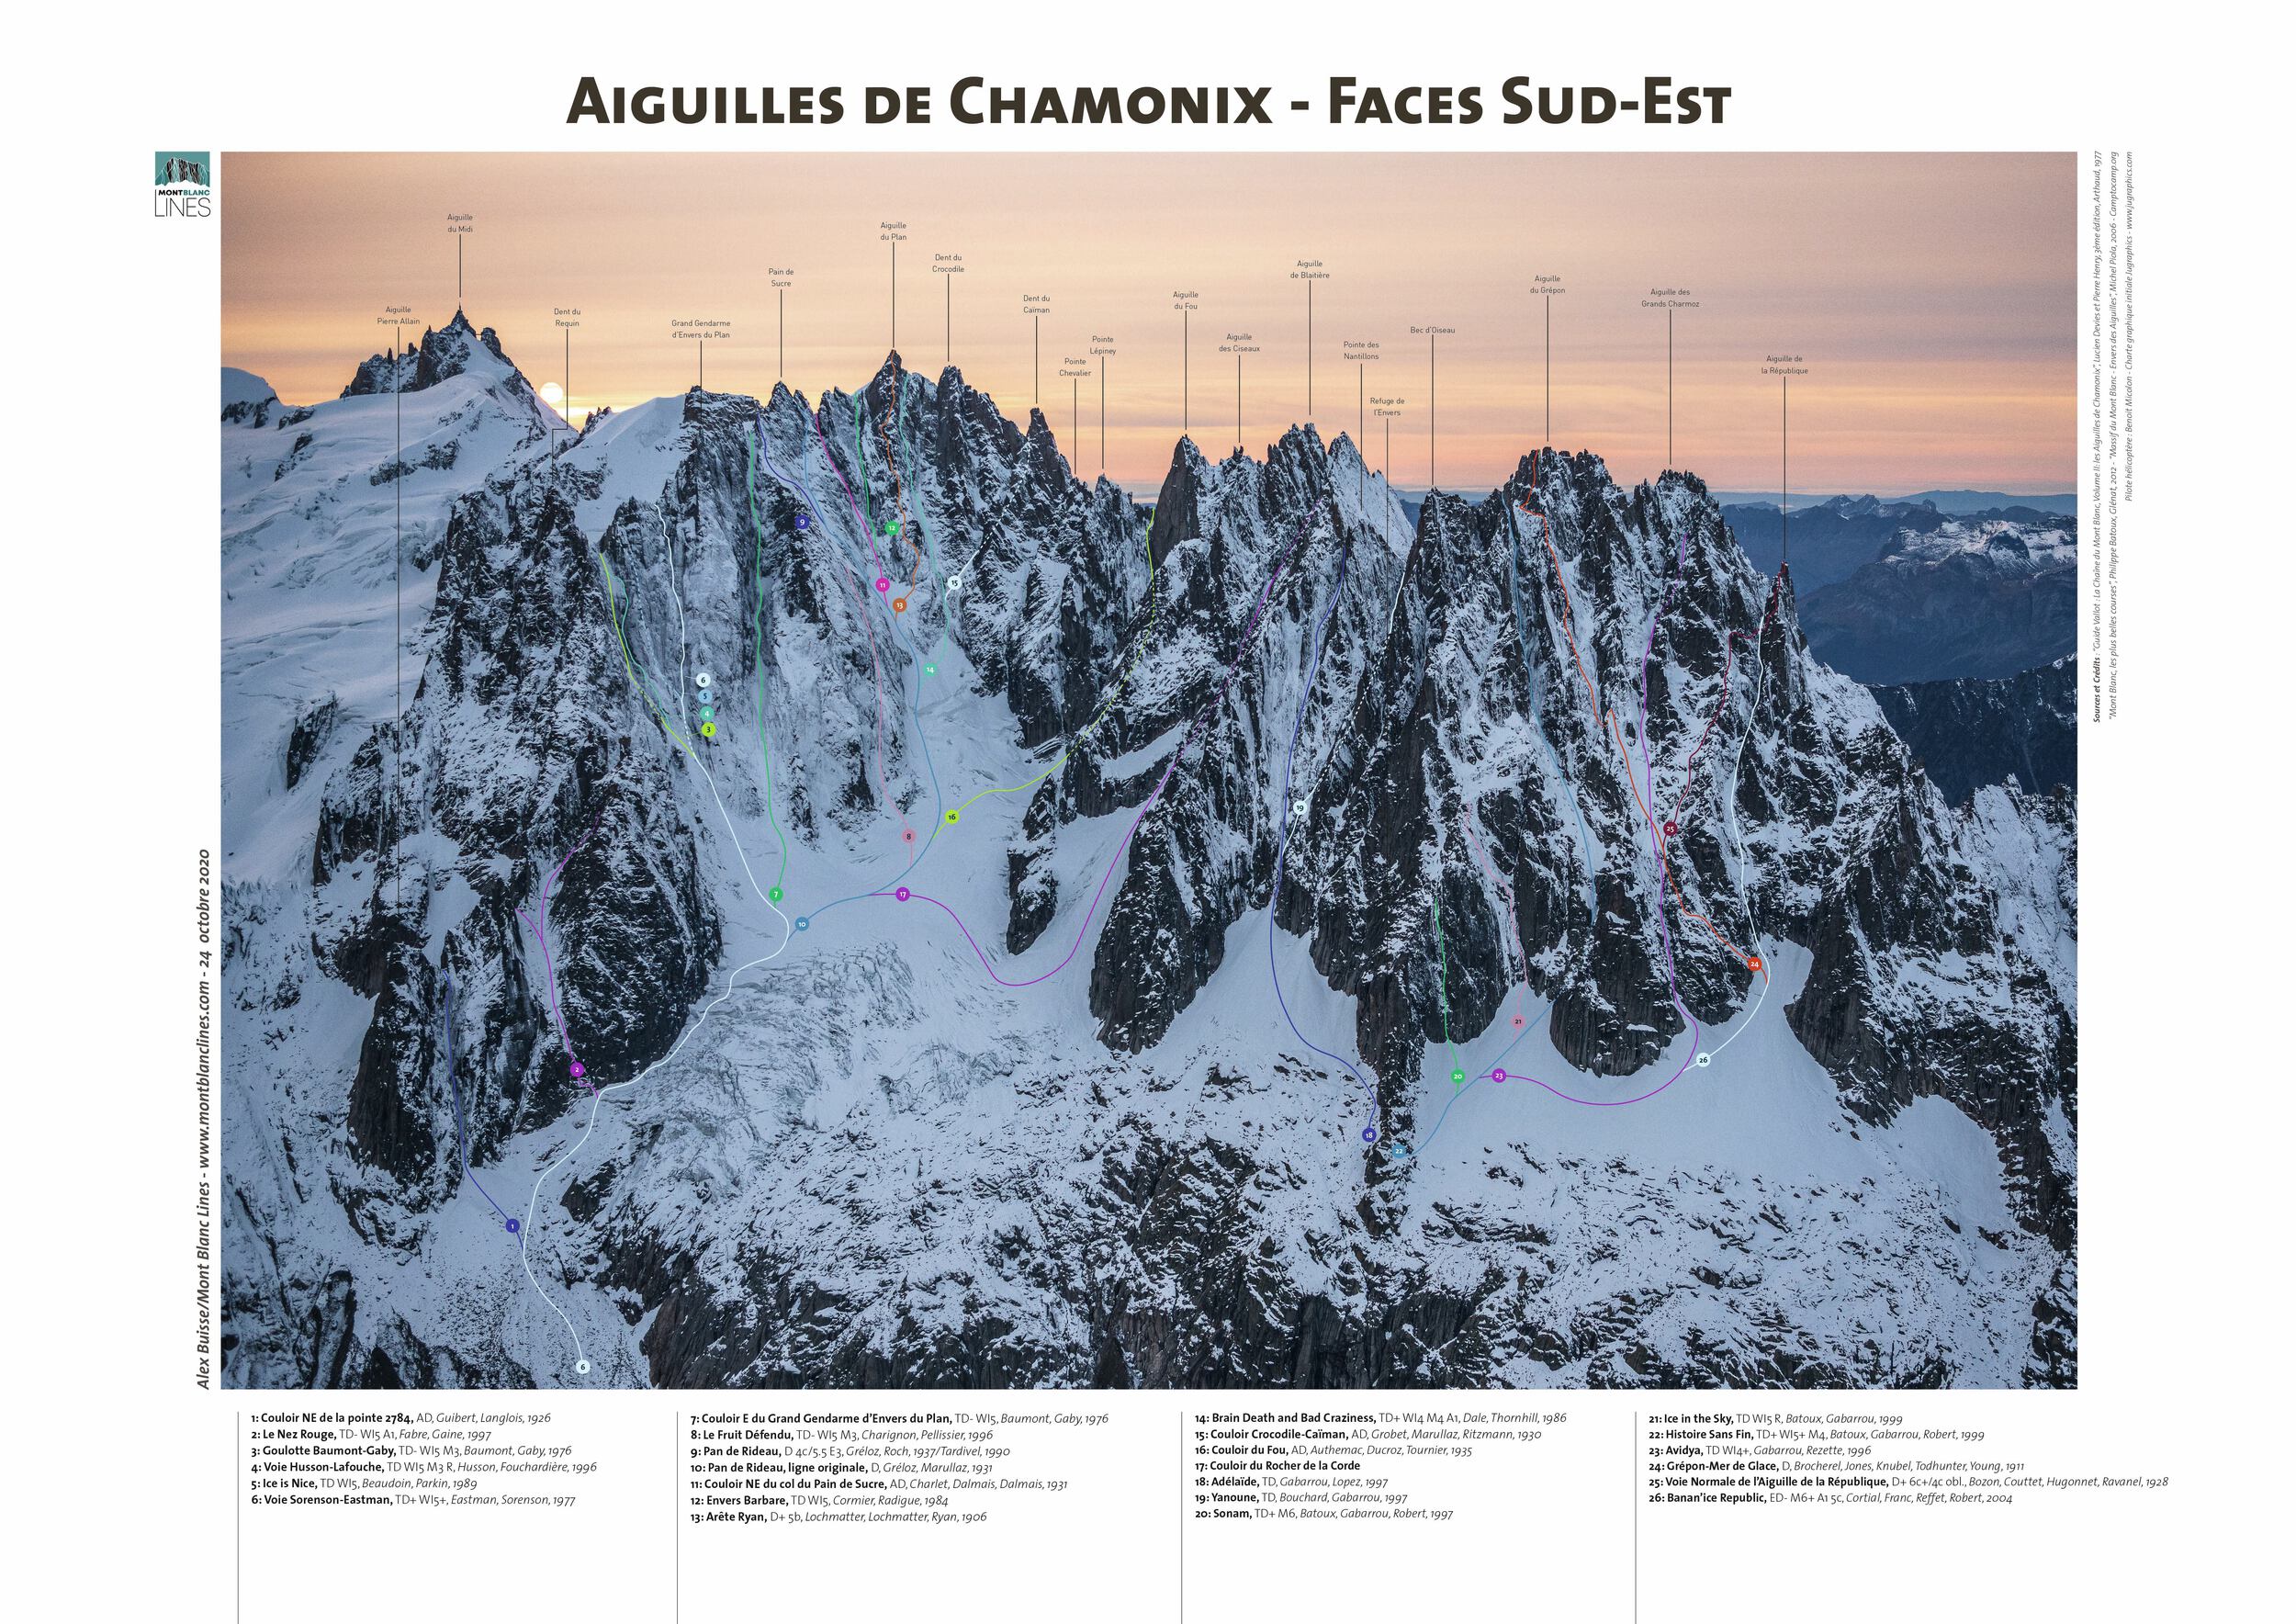 Aiguilles de Chamonix - Southeast Faces